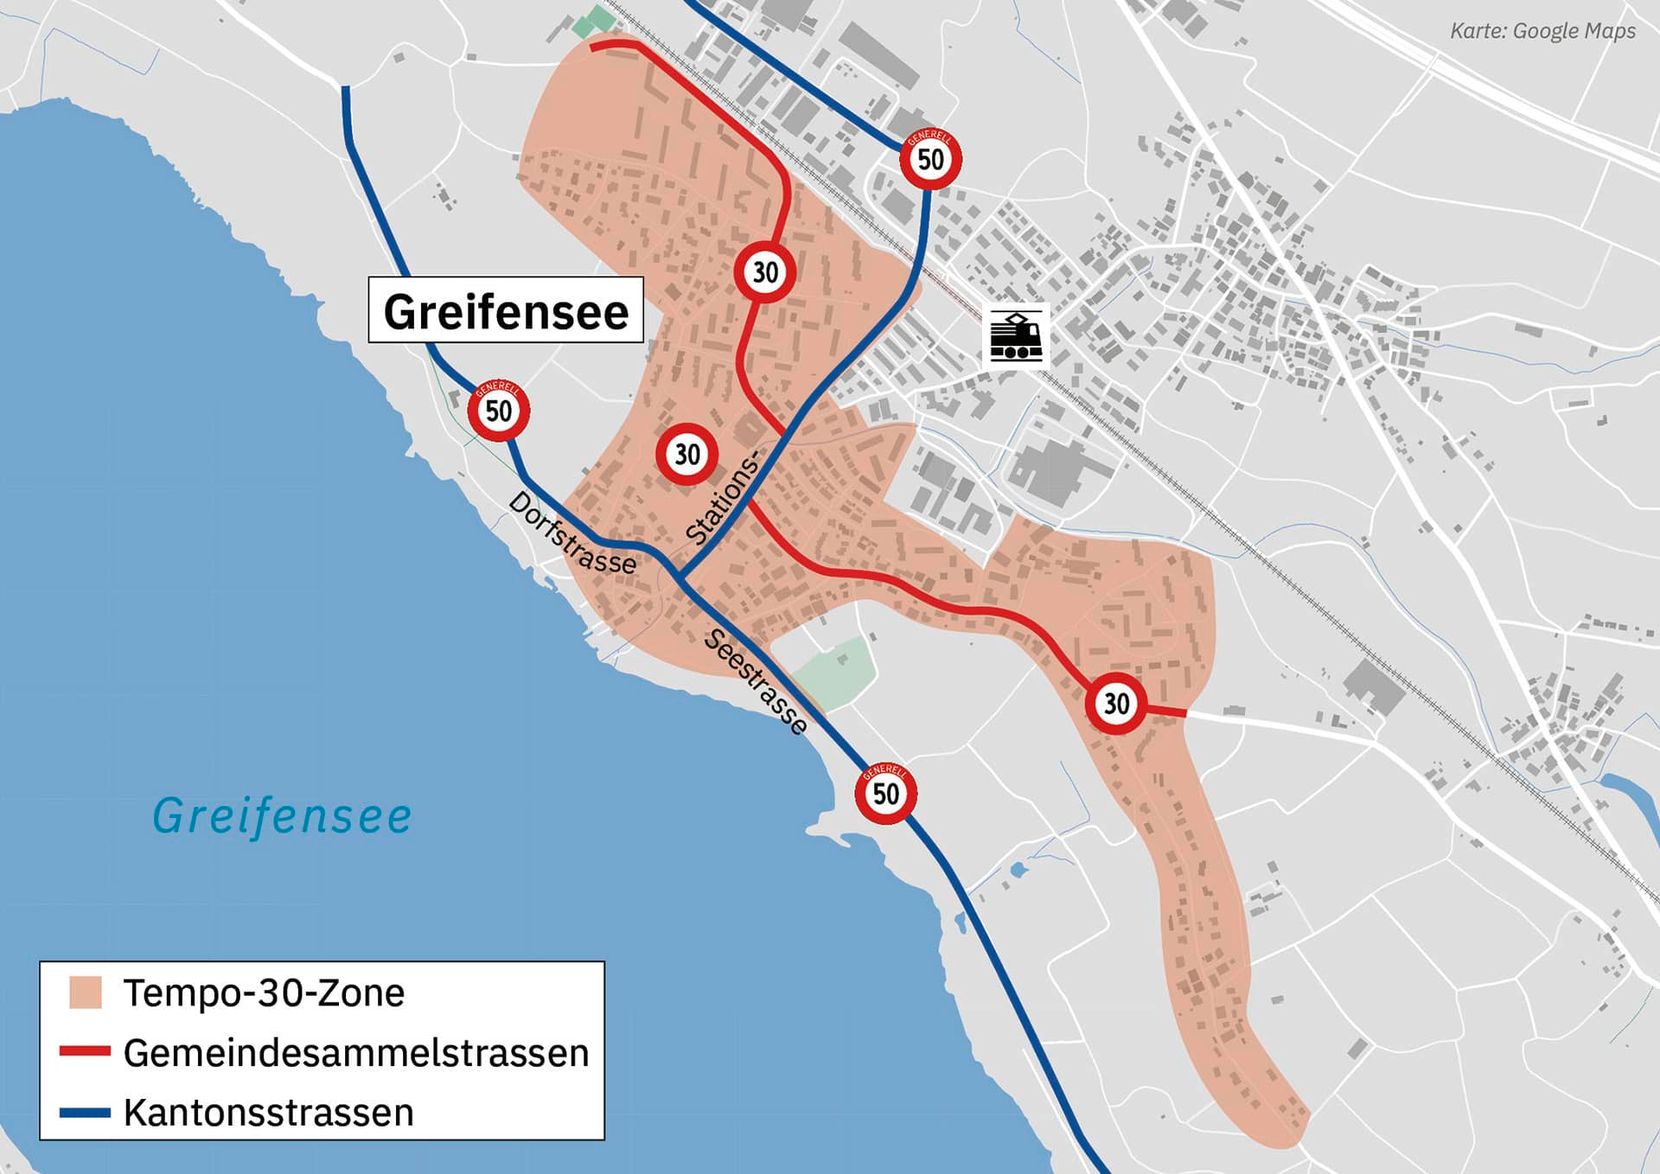 Karte von Greifensee mit grossflächigen Tempo-30-Zonen. Auf den Kantonsstrassen gilt noch Tempo 50.